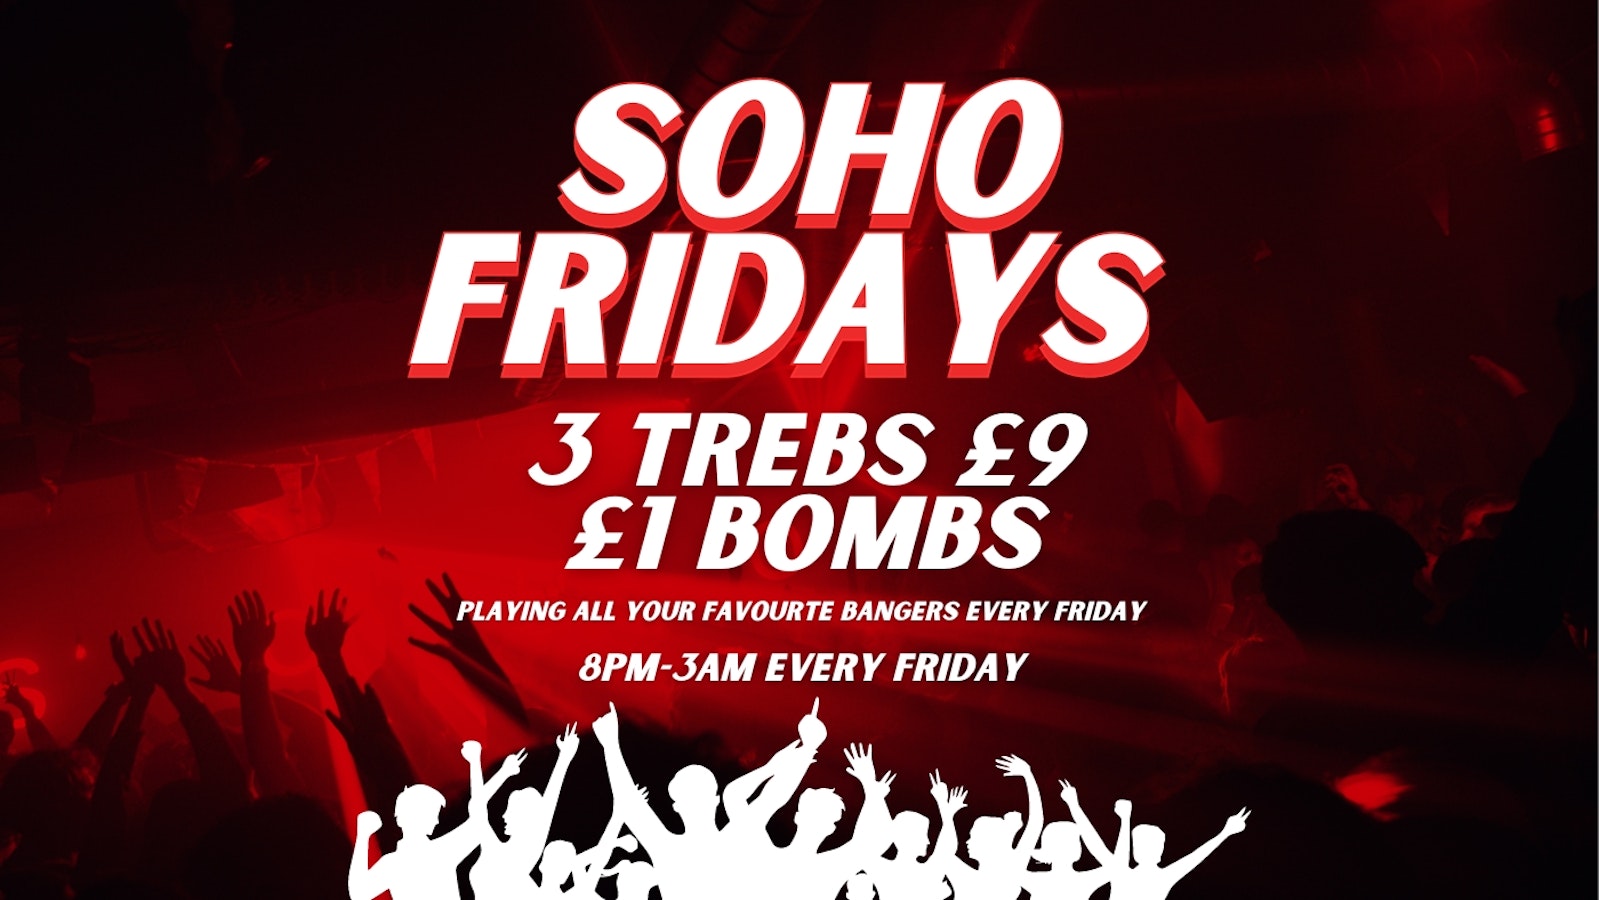 SOHO FRIDAYS | 300 FREE TICKETS | 3 TREBS £9 + £1 BOMBS |